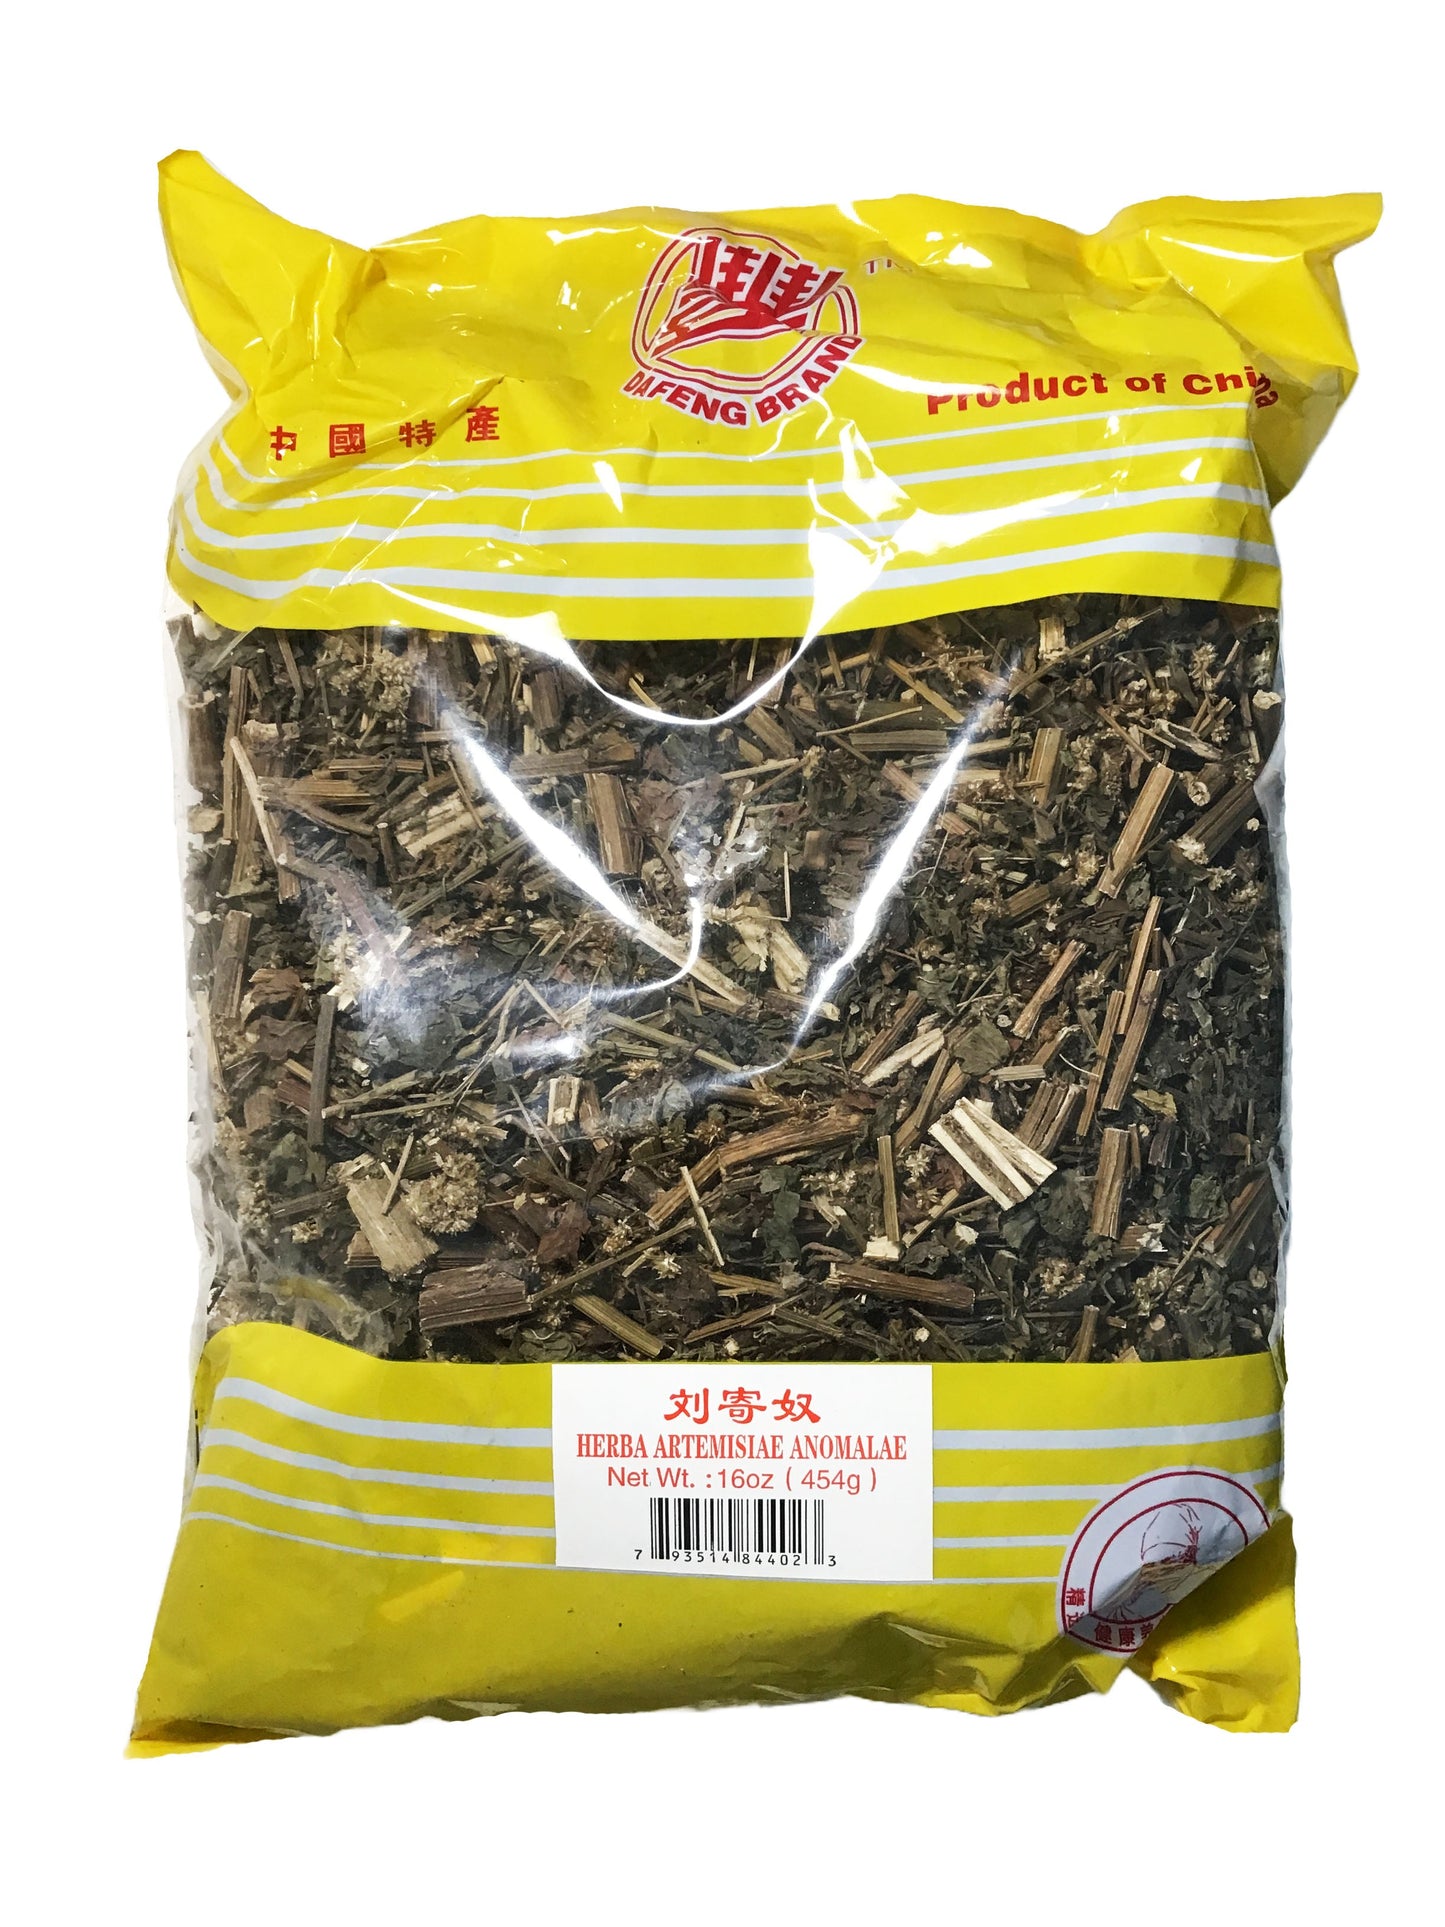 Anomalous Artemisia (Herba Artemisiae Anomalae) - 刘寄奴 (liú jì nú)